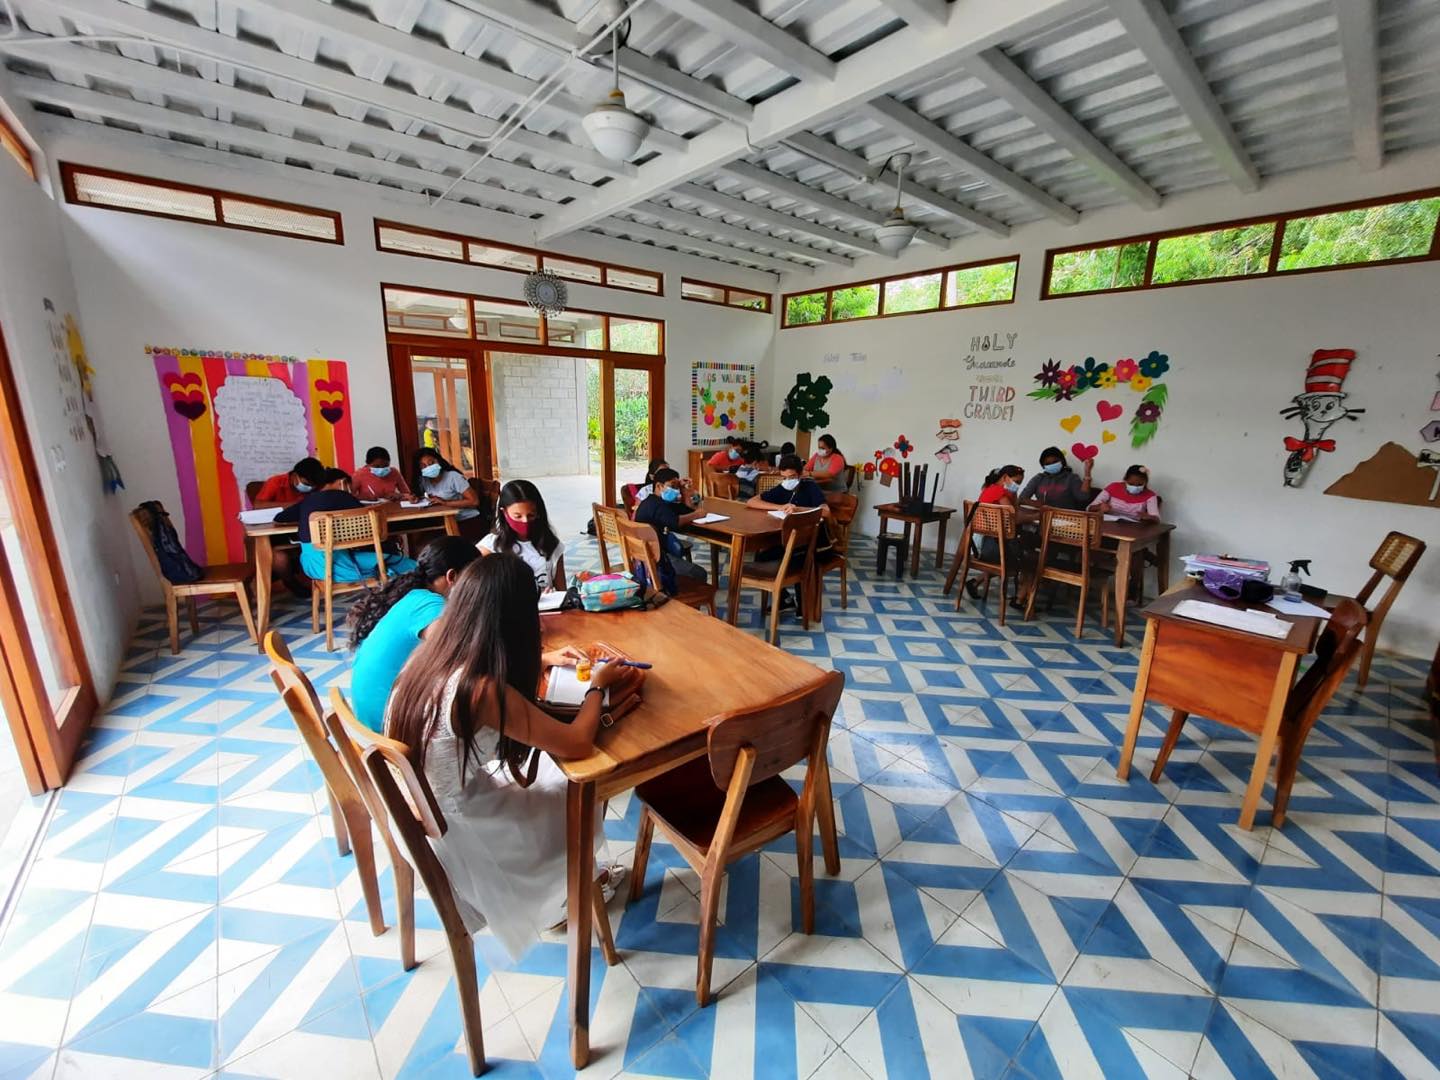 Escuela Adelante is one of the private schools of San Juan Del Sur.
